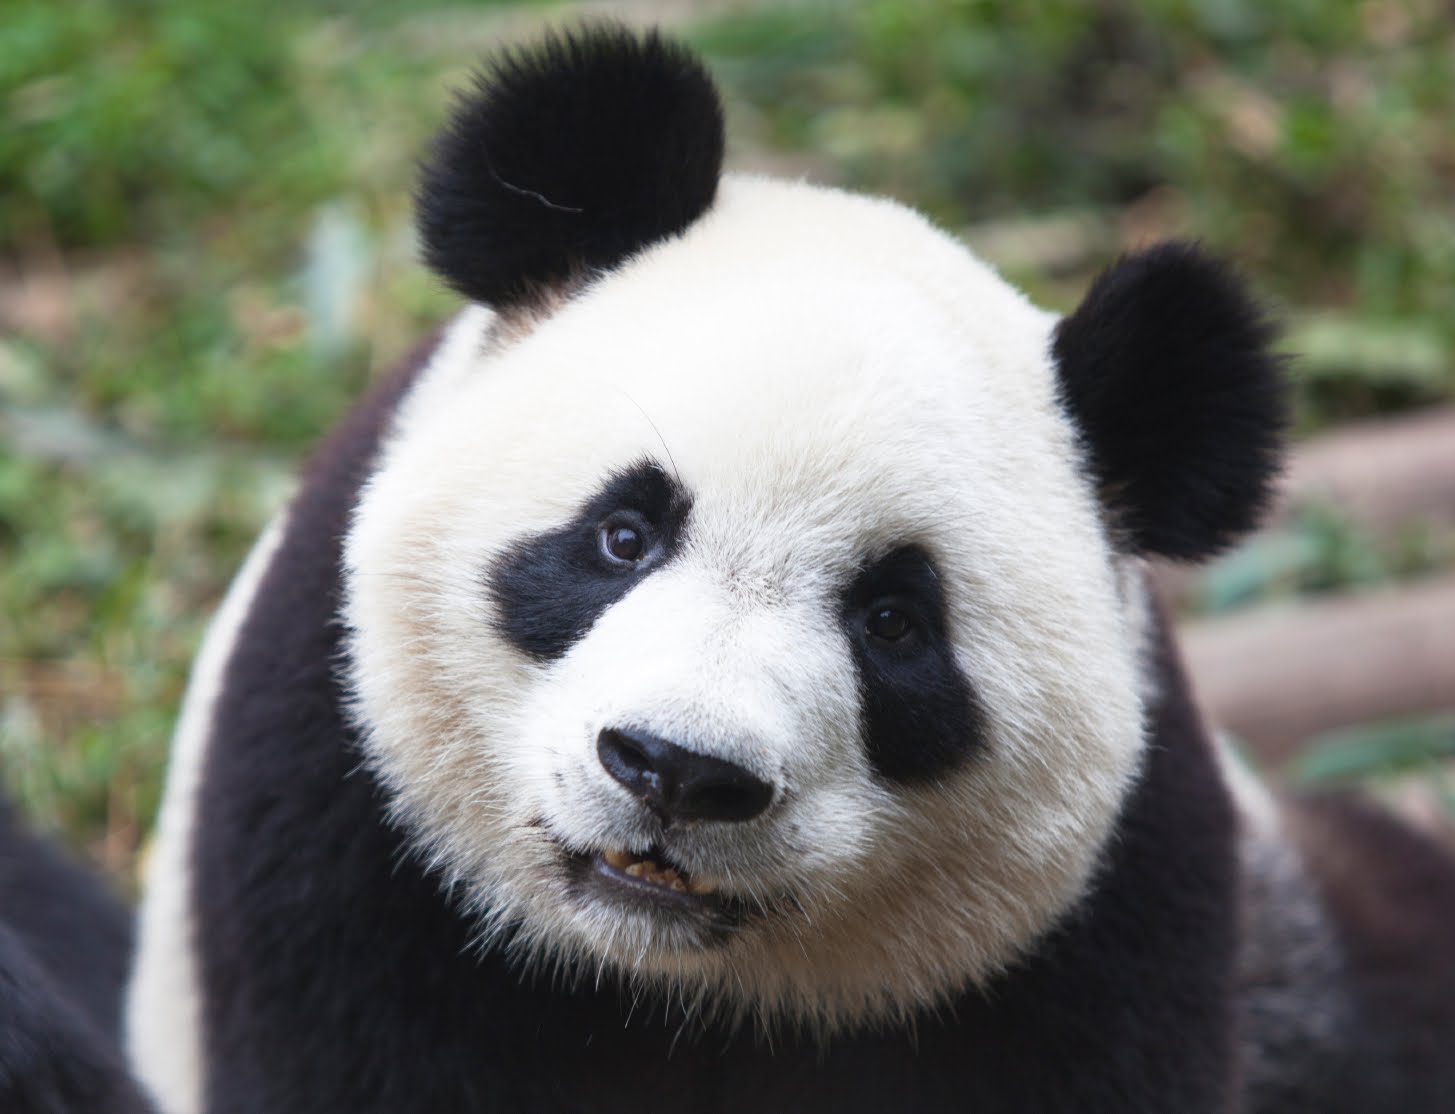 Cute-Panda-Bears-animals-34916401-1455-1114.jpg